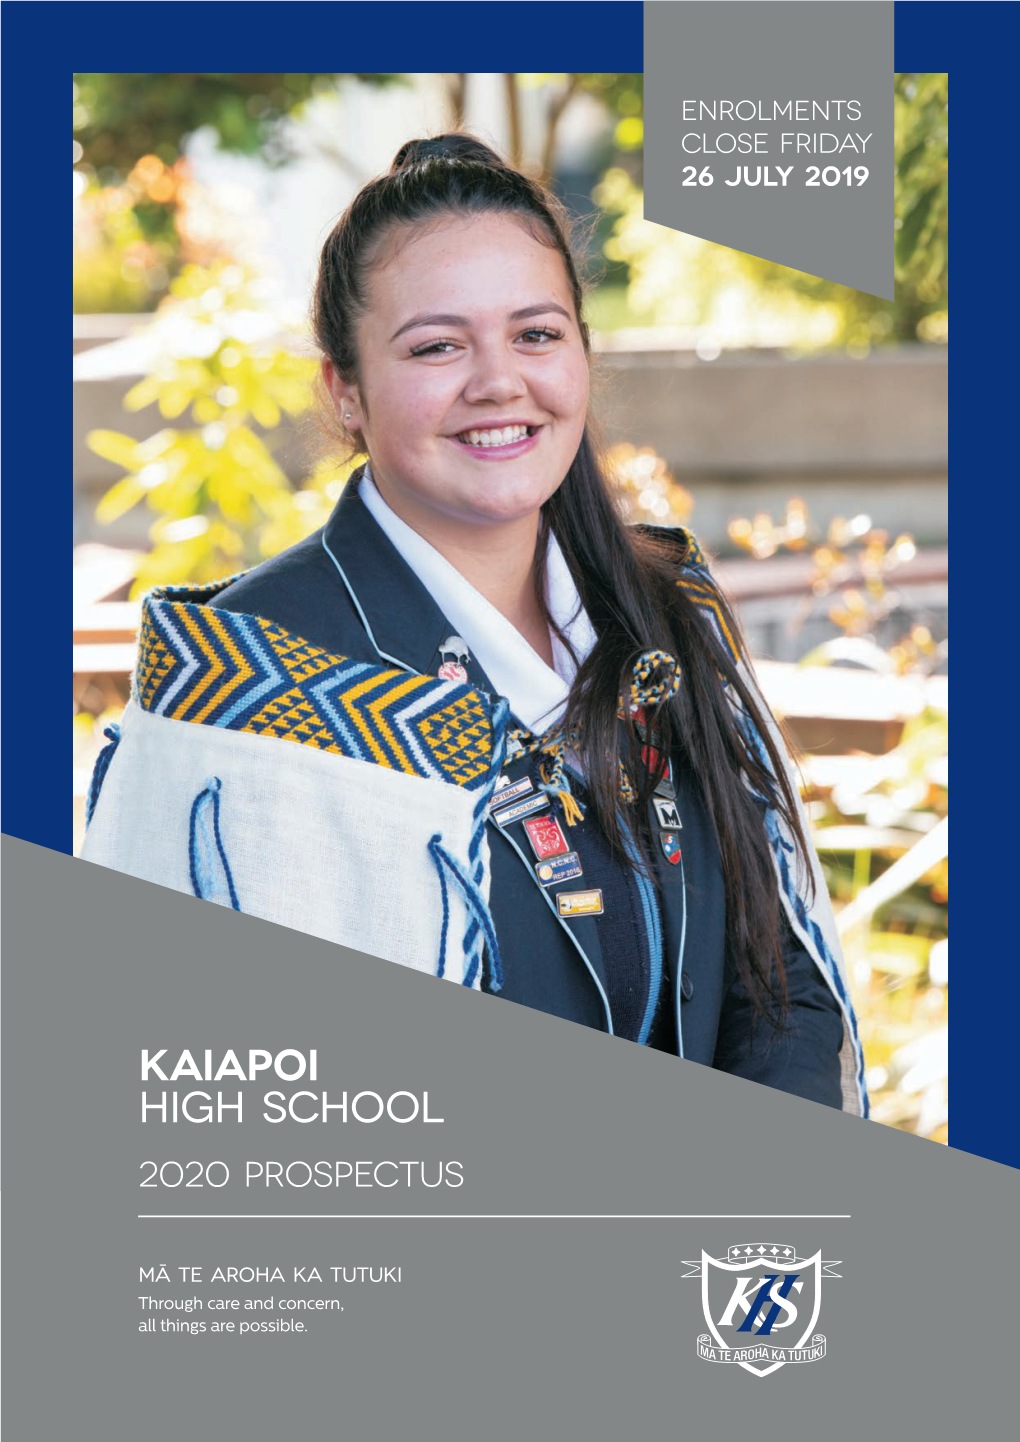 Kaiapoi High School 2020 PROSPECTUS